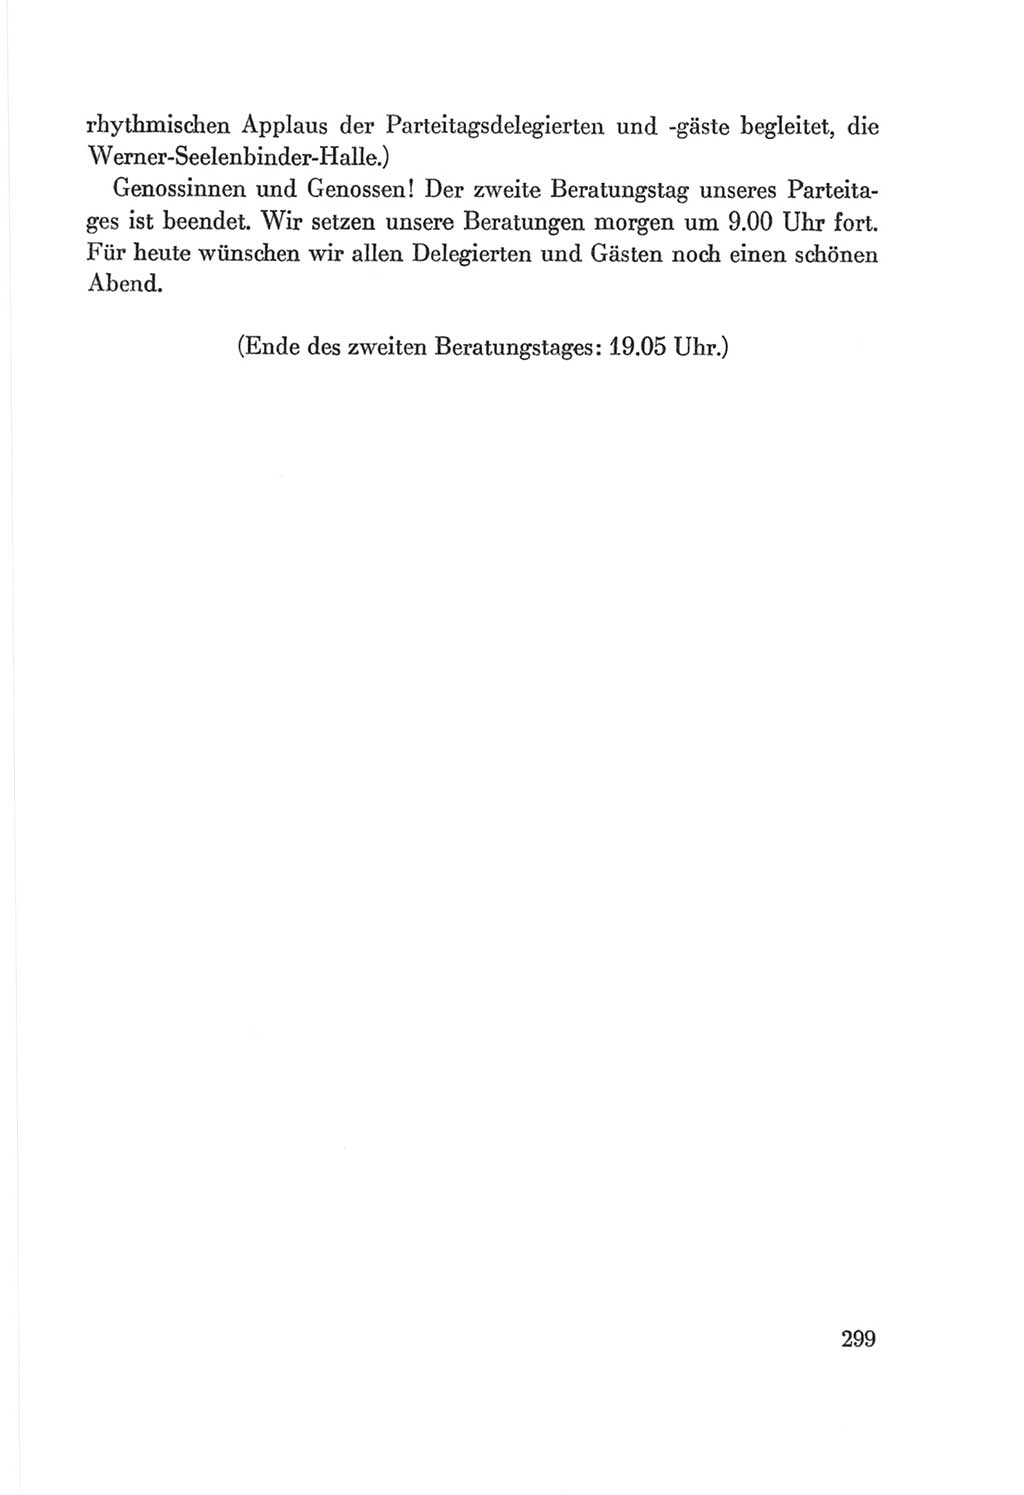 Protokoll der Verhandlungen des Ⅷ. Parteitages der Sozialistischen Einheitspartei Deutschlands (SED) [Deutsche Demokratische Republik (DDR)] 1971, Band 1, Seite 299 (Prot. Verh. Ⅷ. PT SED DDR 1971, Bd. 1, S. 299)